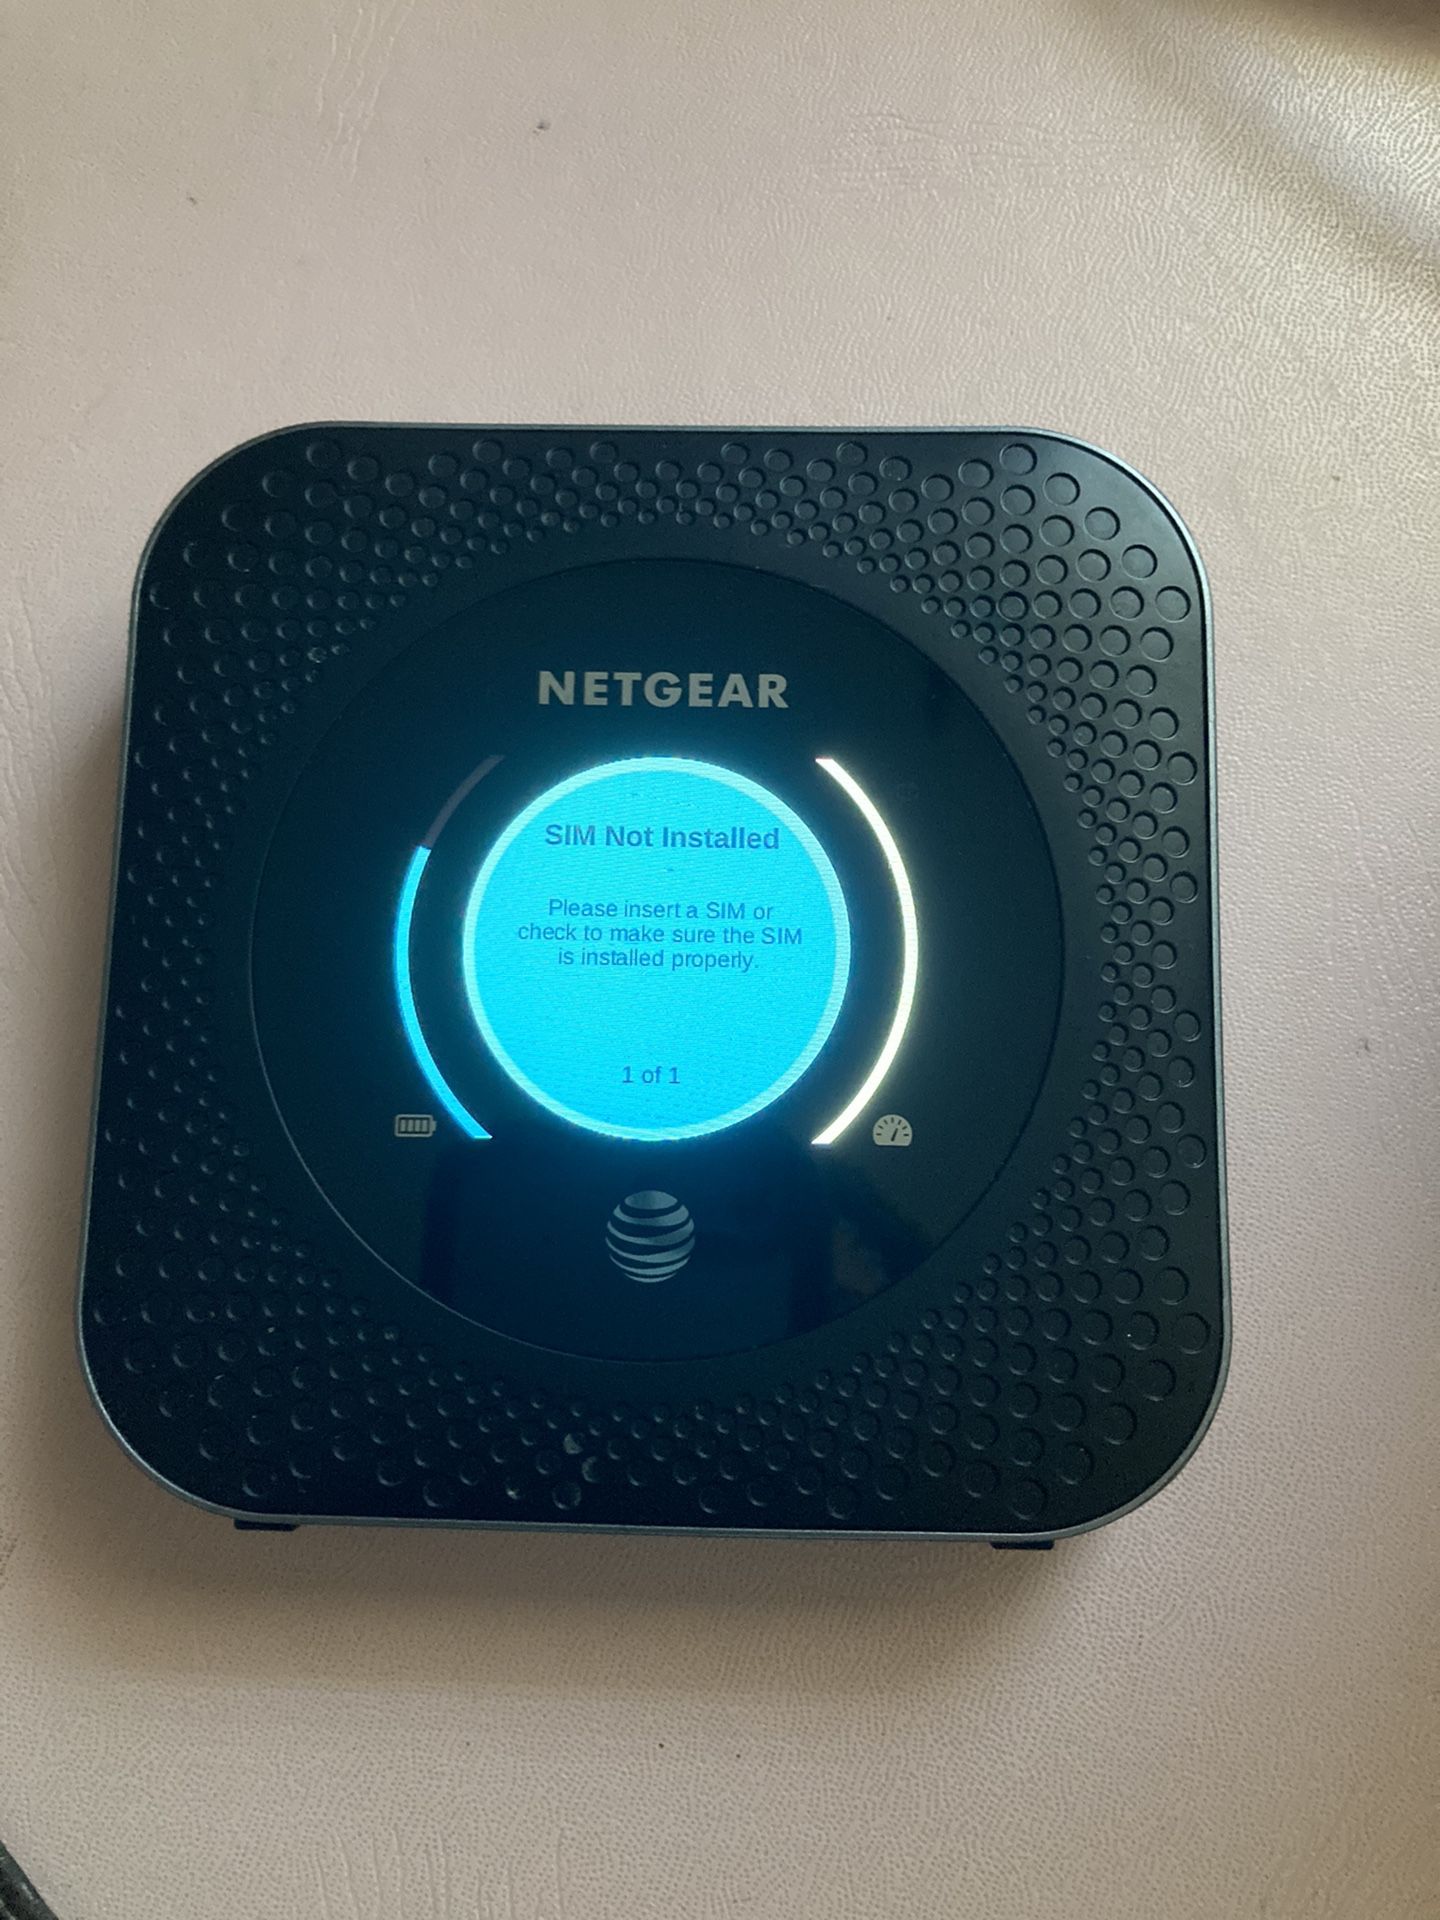 NETGEAR MR1100 Nighthawk 4G LTE Mobile Hotspot Router